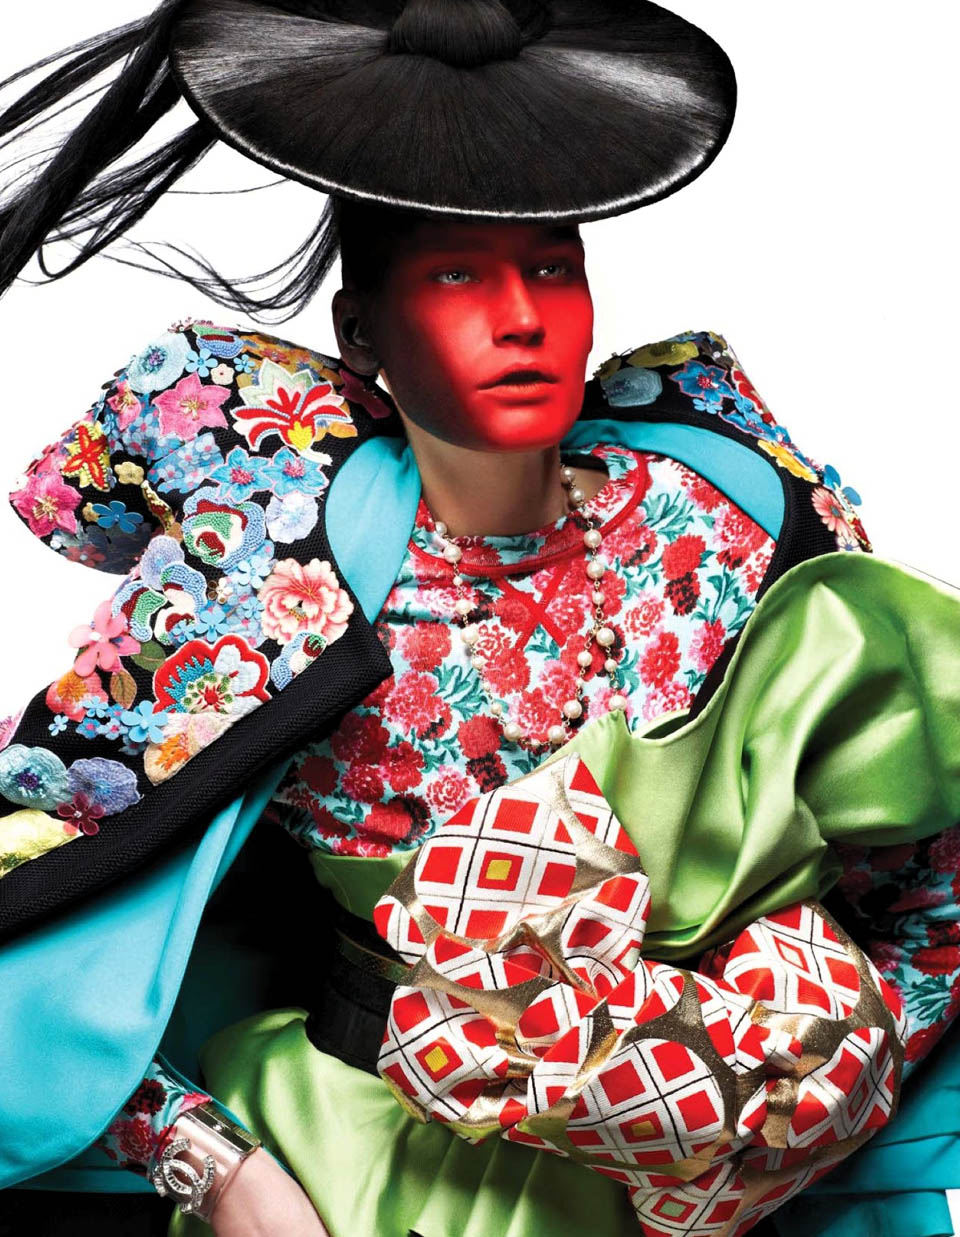 Moda oriental y prendas actuales por Vogue Netherlands, 2013